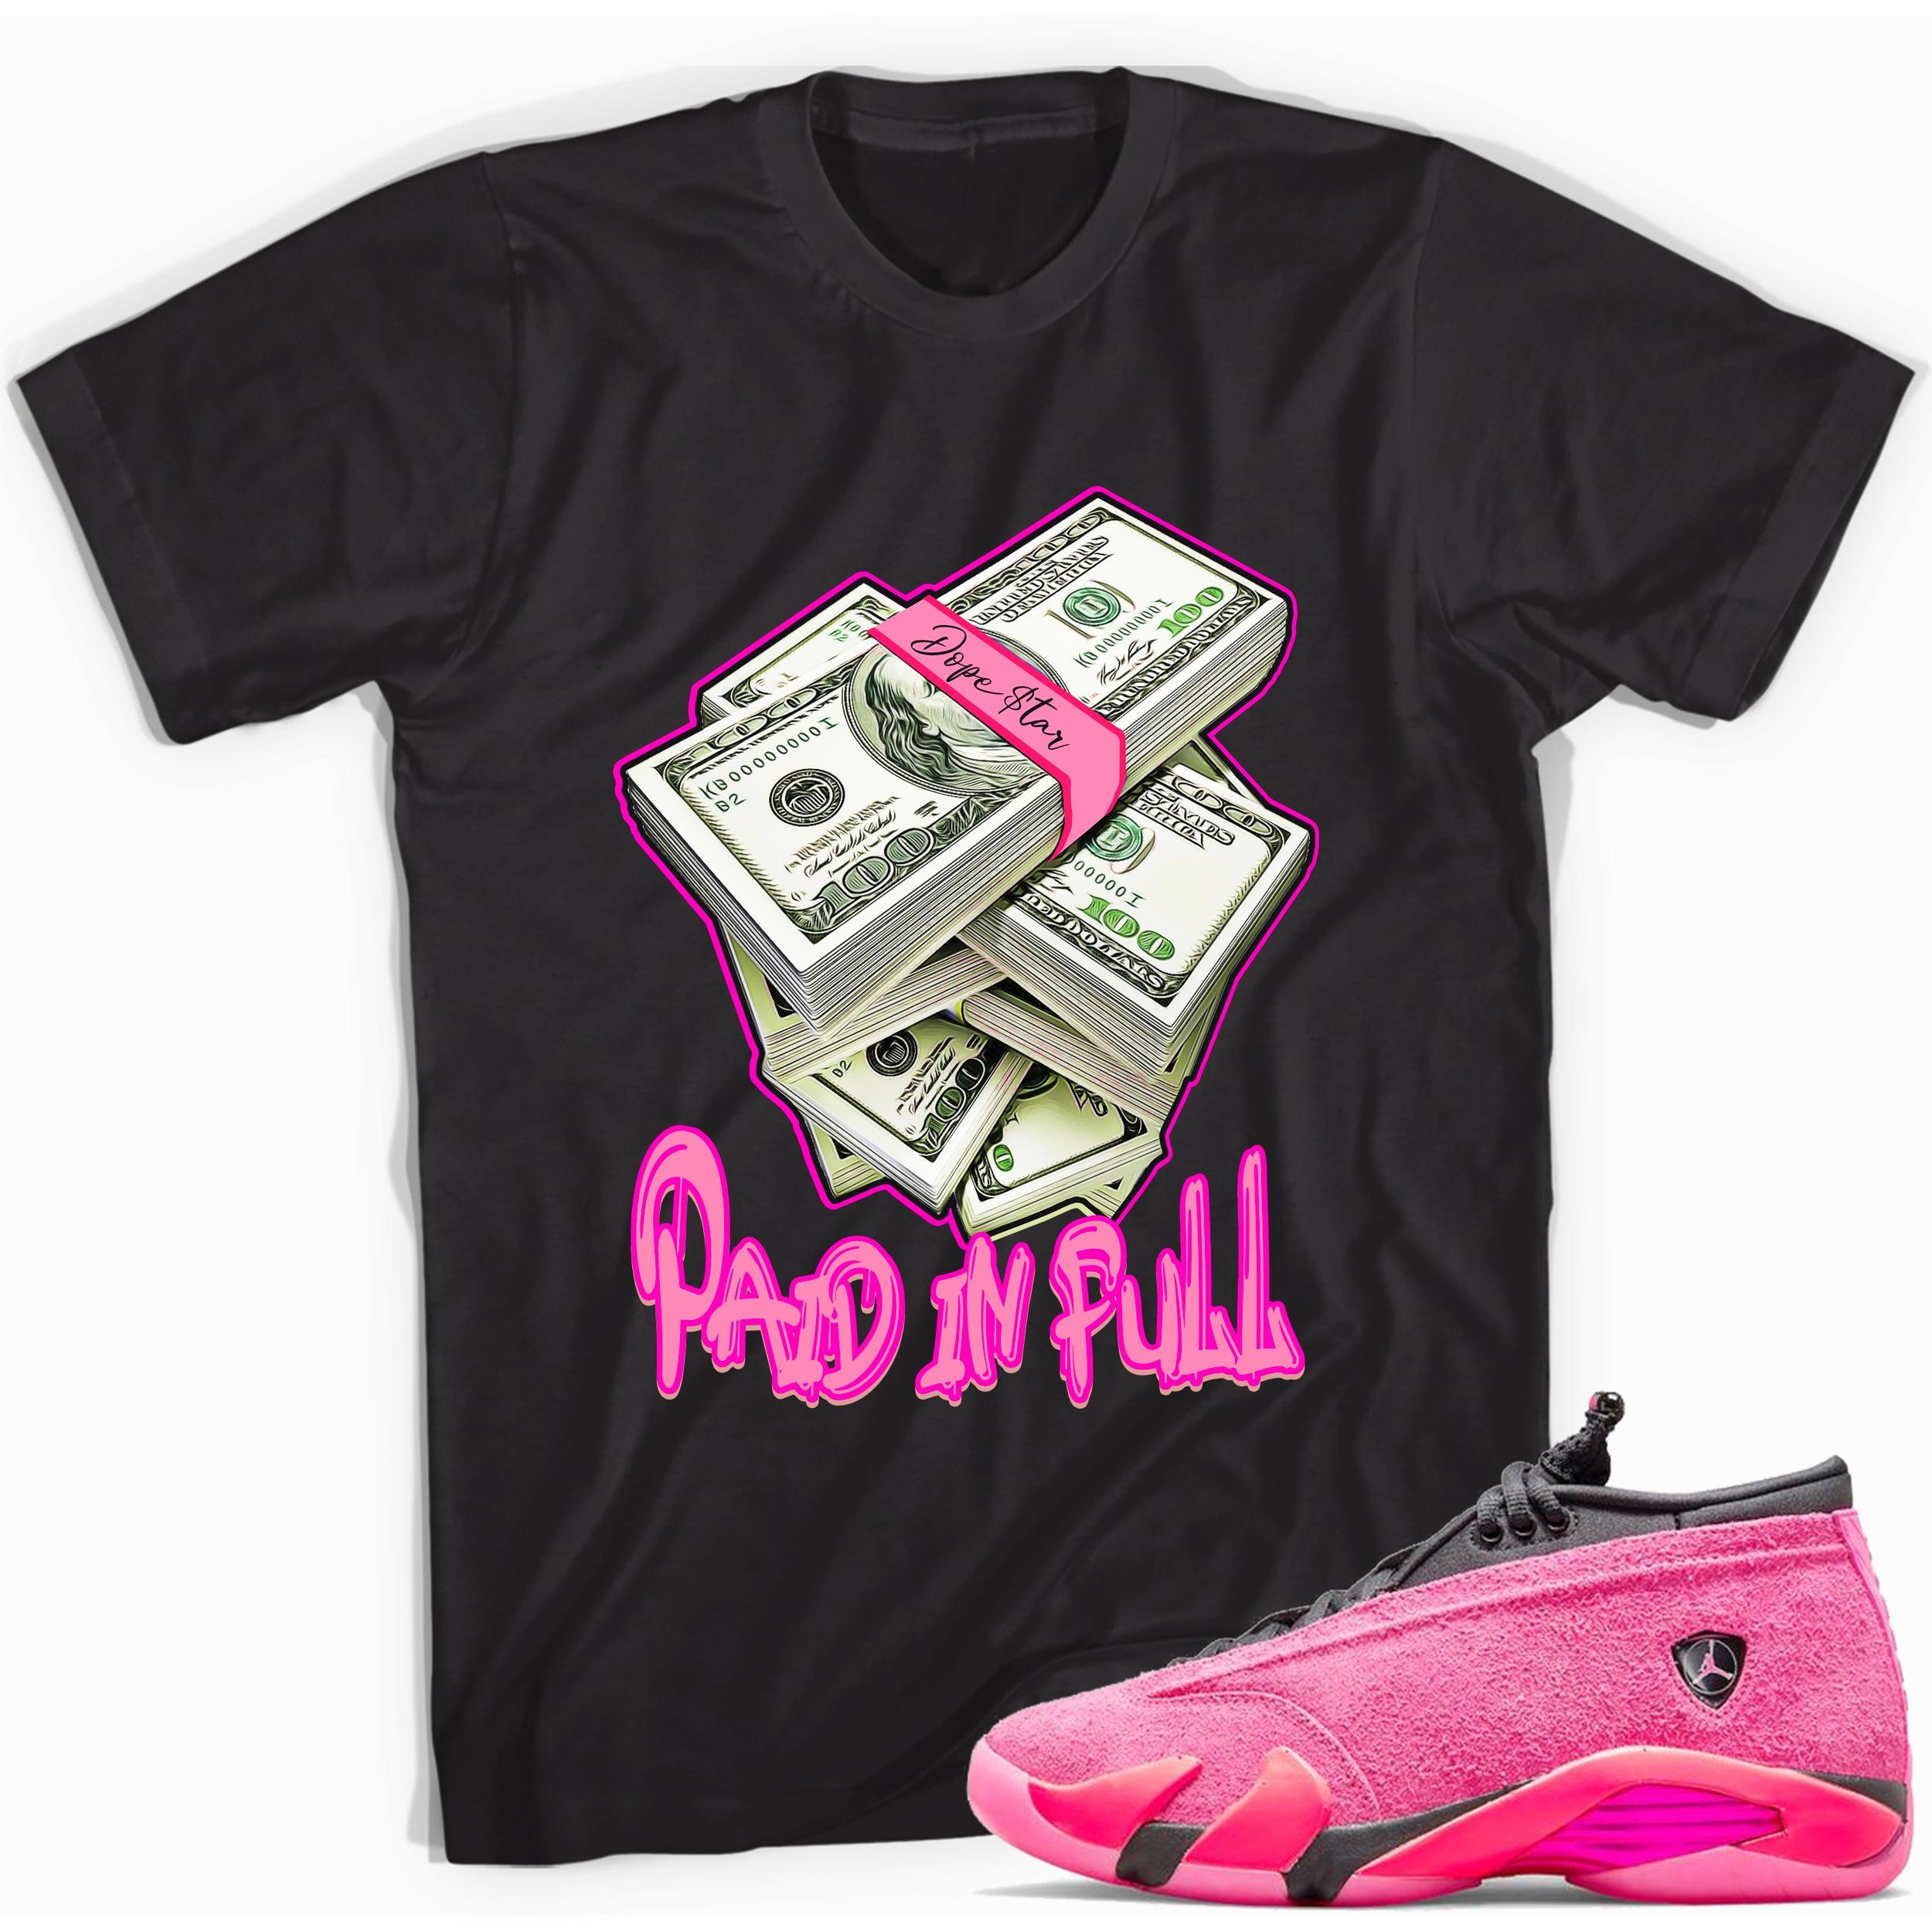 Black Paid In Full Shirt AJ 14s Low Shocking Pink photo